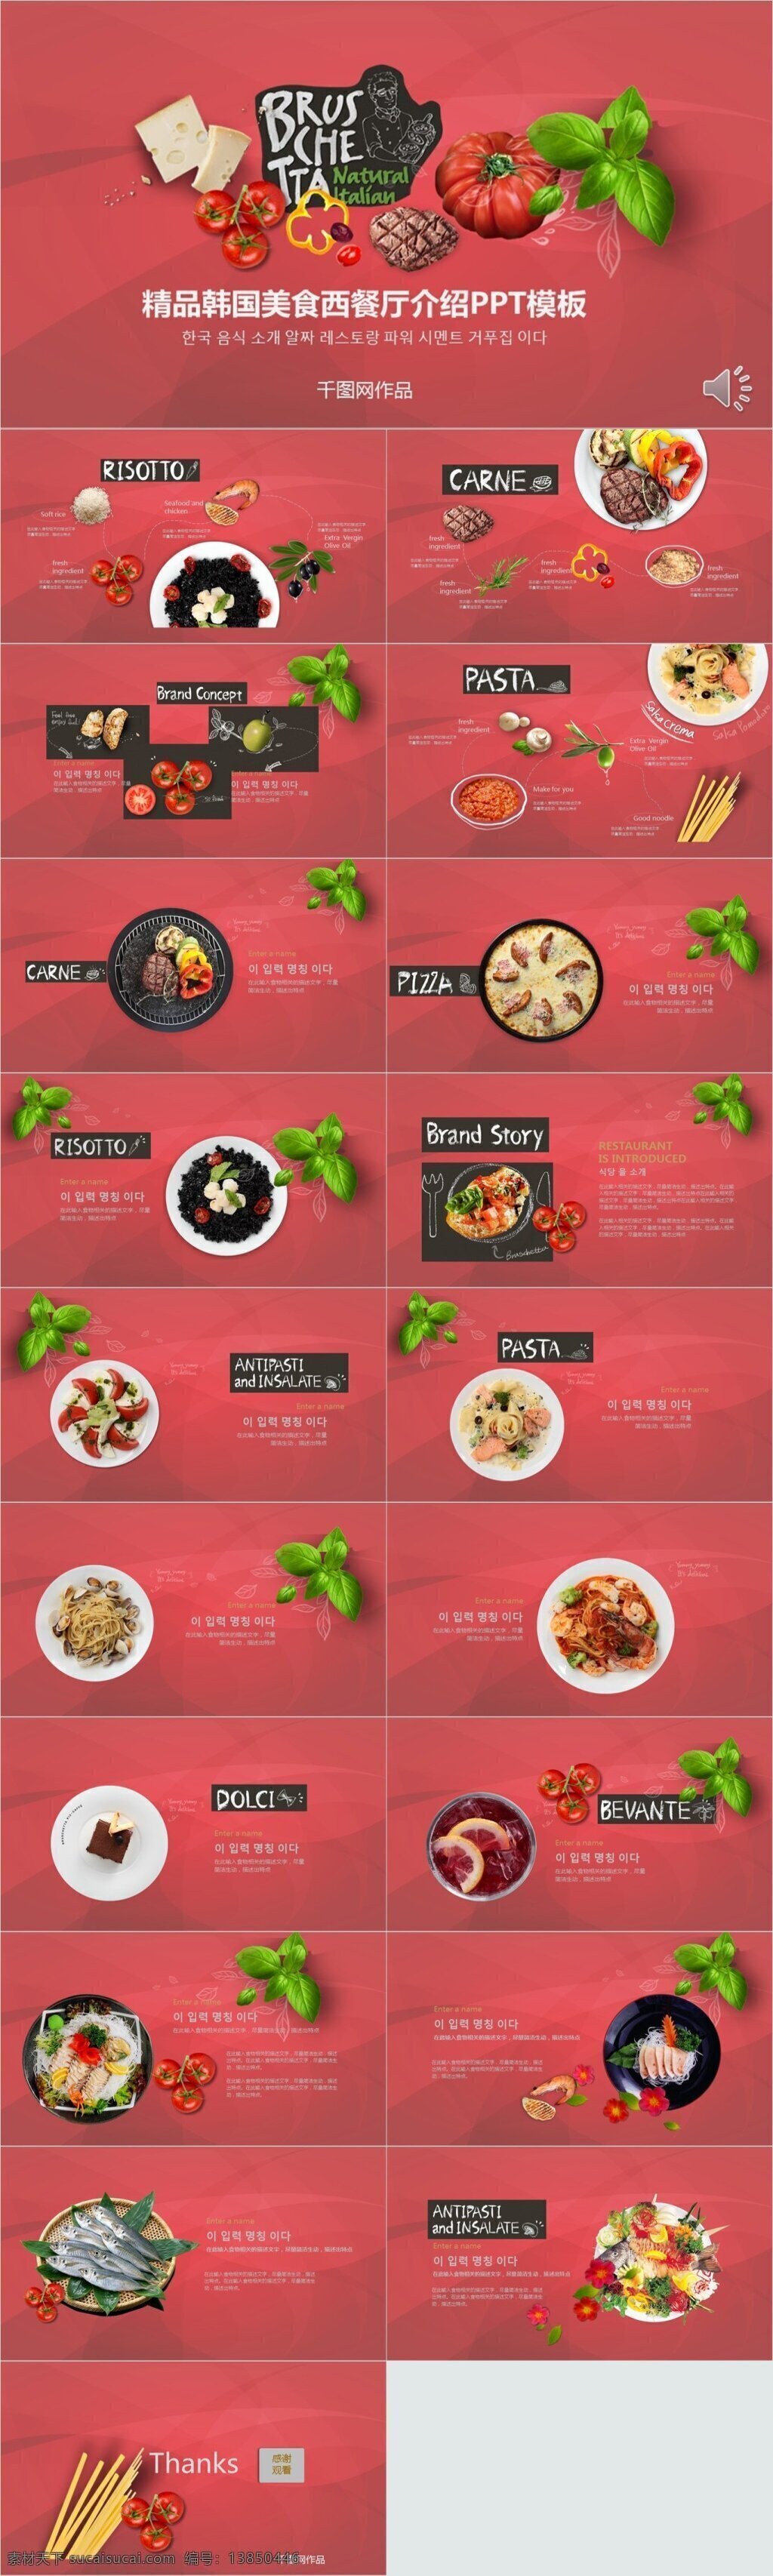 精品 韩国 美食 西餐厅 介绍 模板 ppt模板 ppt创意 ppt设计